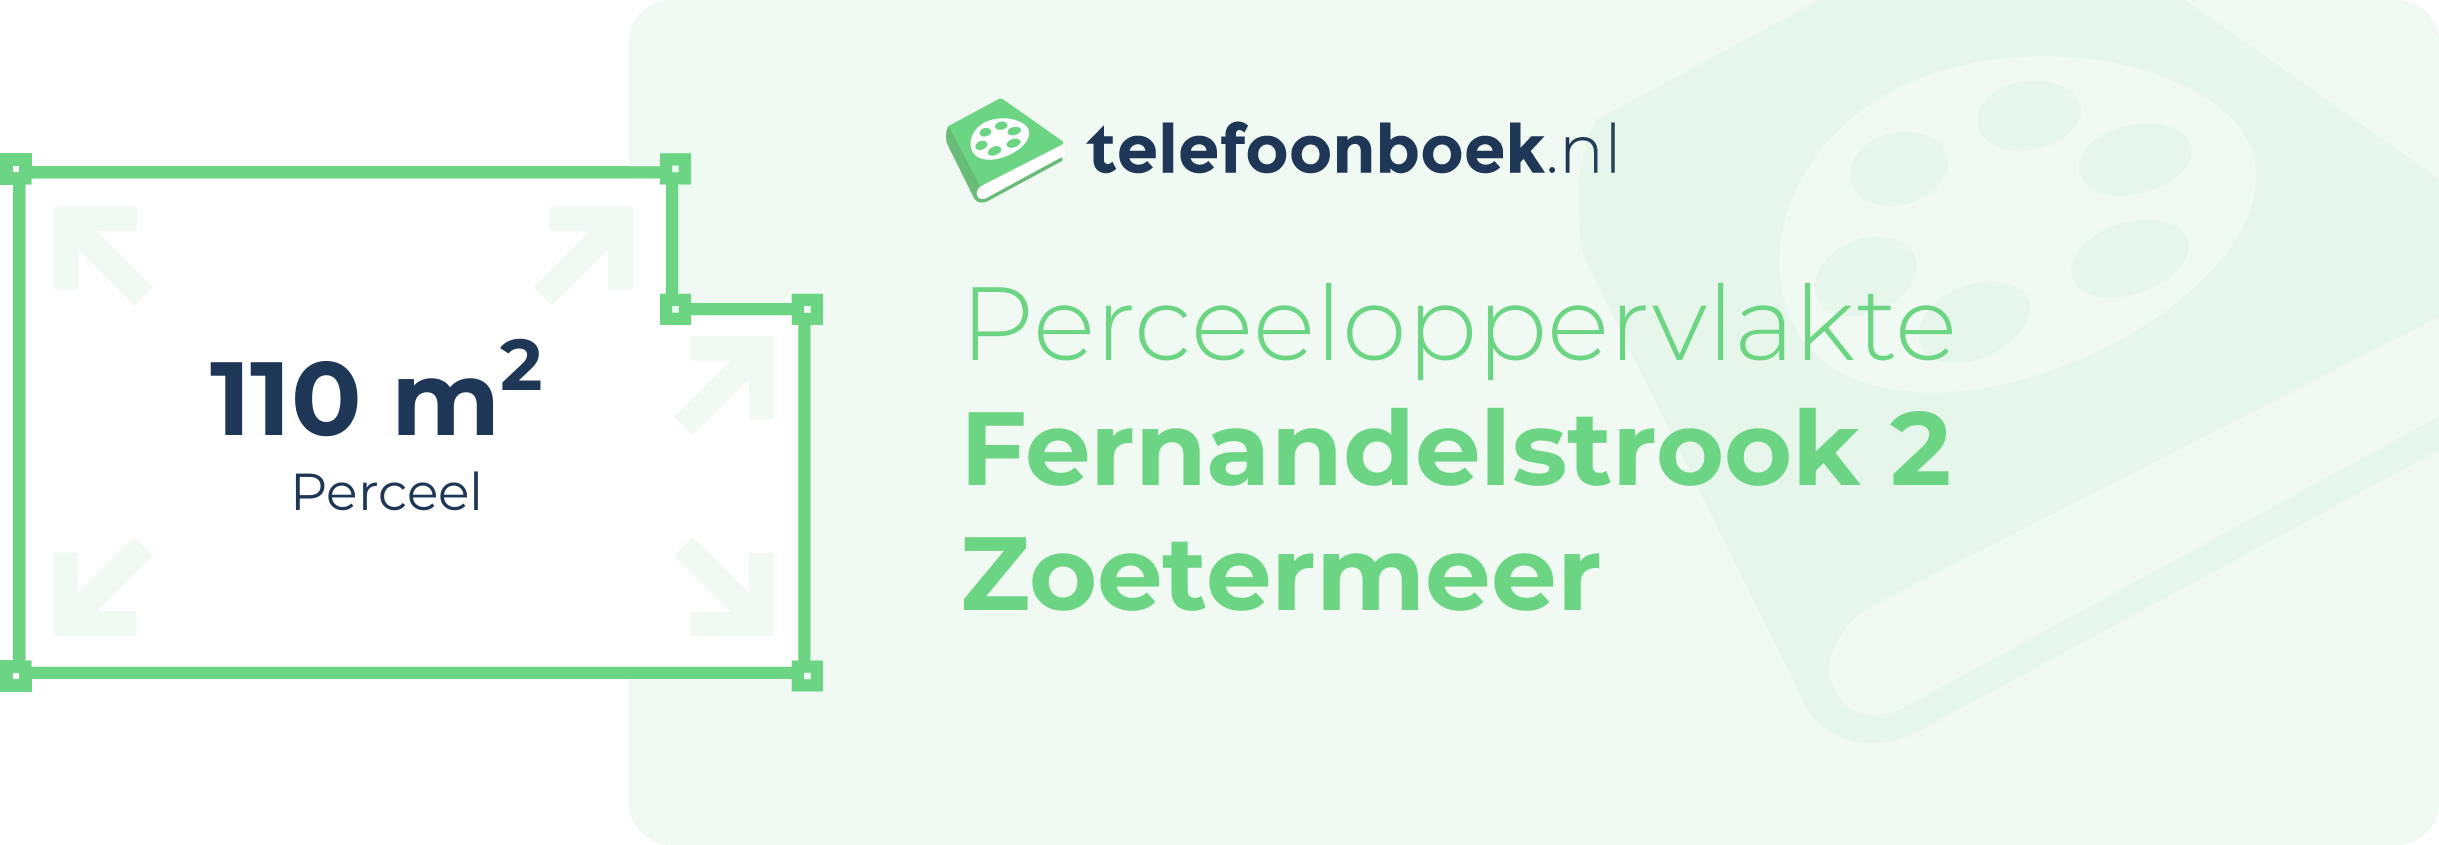 Perceeloppervlakte Fernandelstrook 2 Zoetermeer